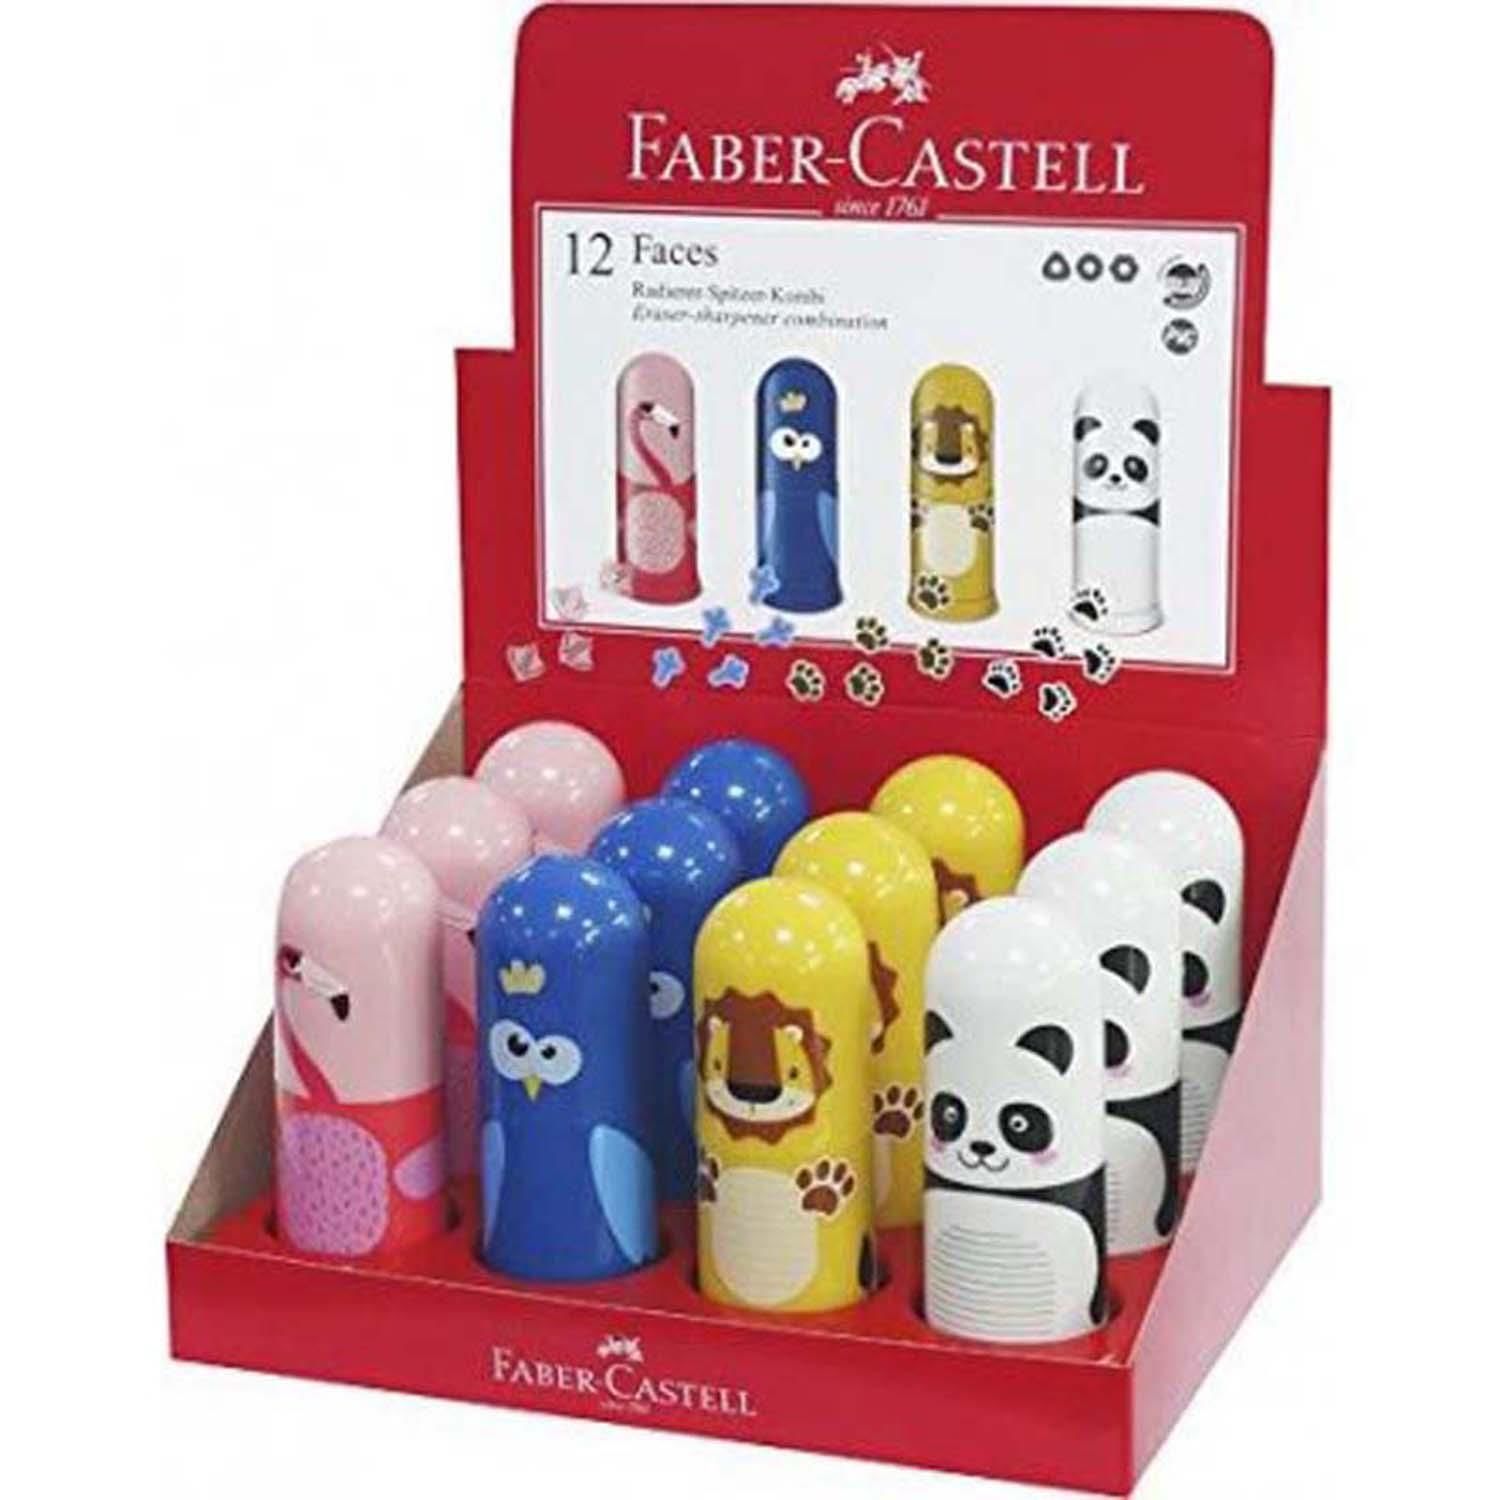 Faber-Castell Faces Silgili Kalemtıraş